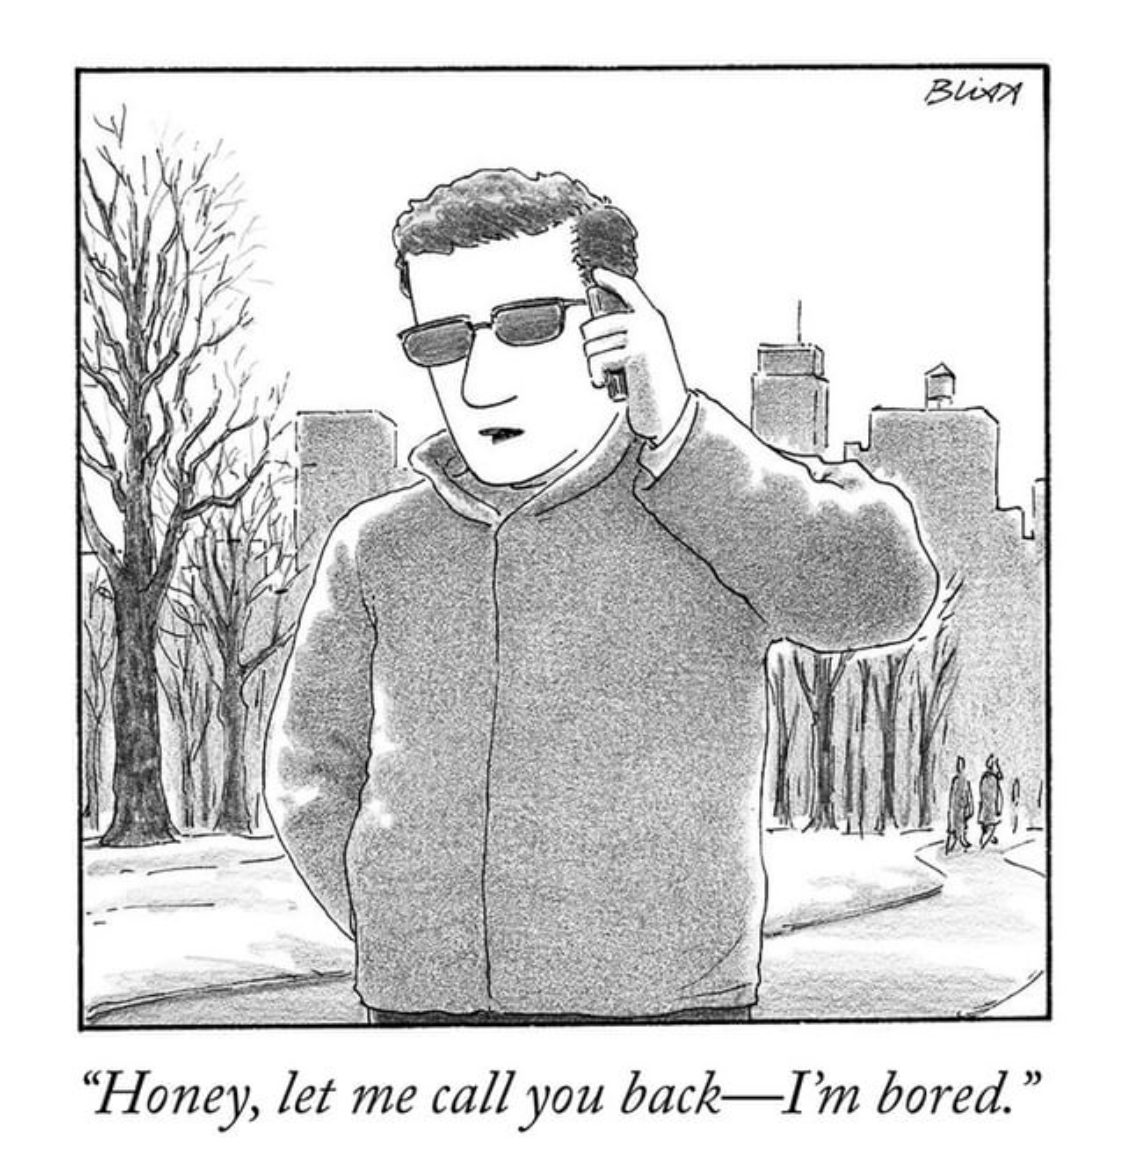 A New Yorker Cartoon about a Douchebag 1